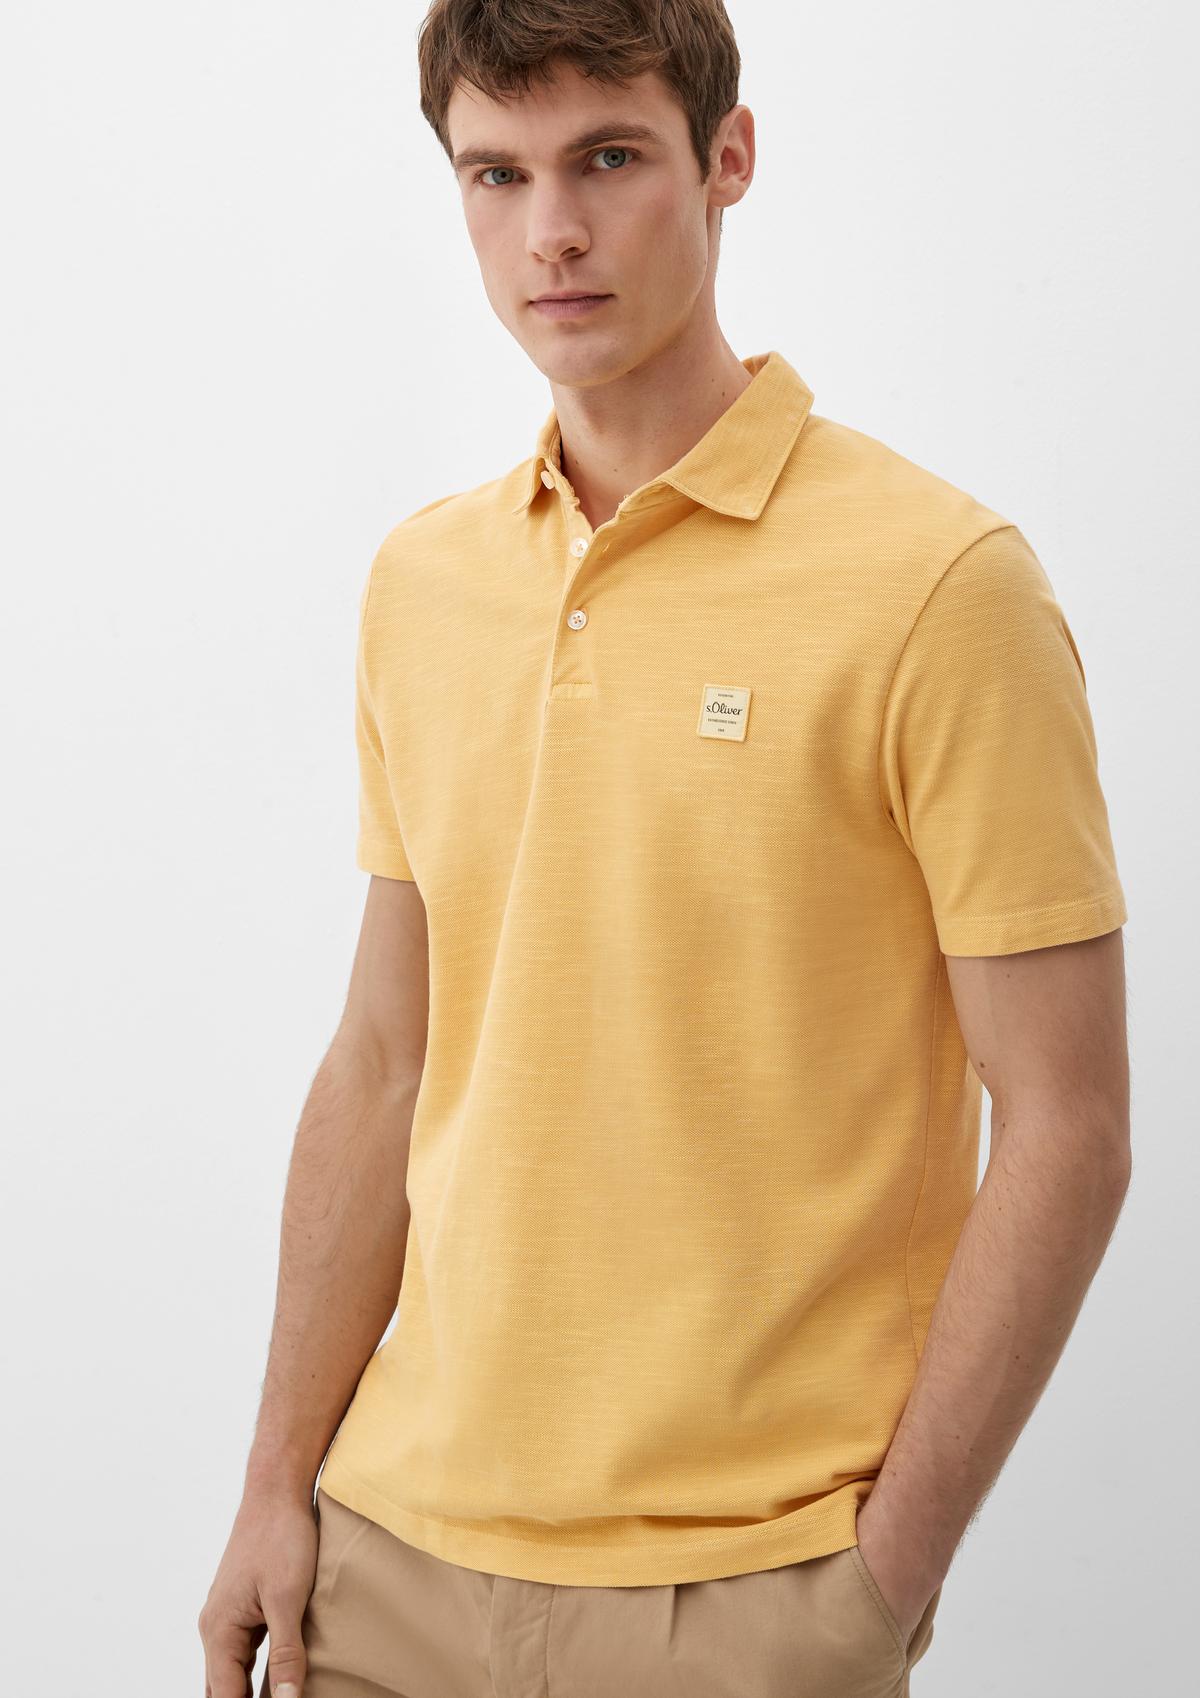 Polo shirt with a - appliqué lemon logo